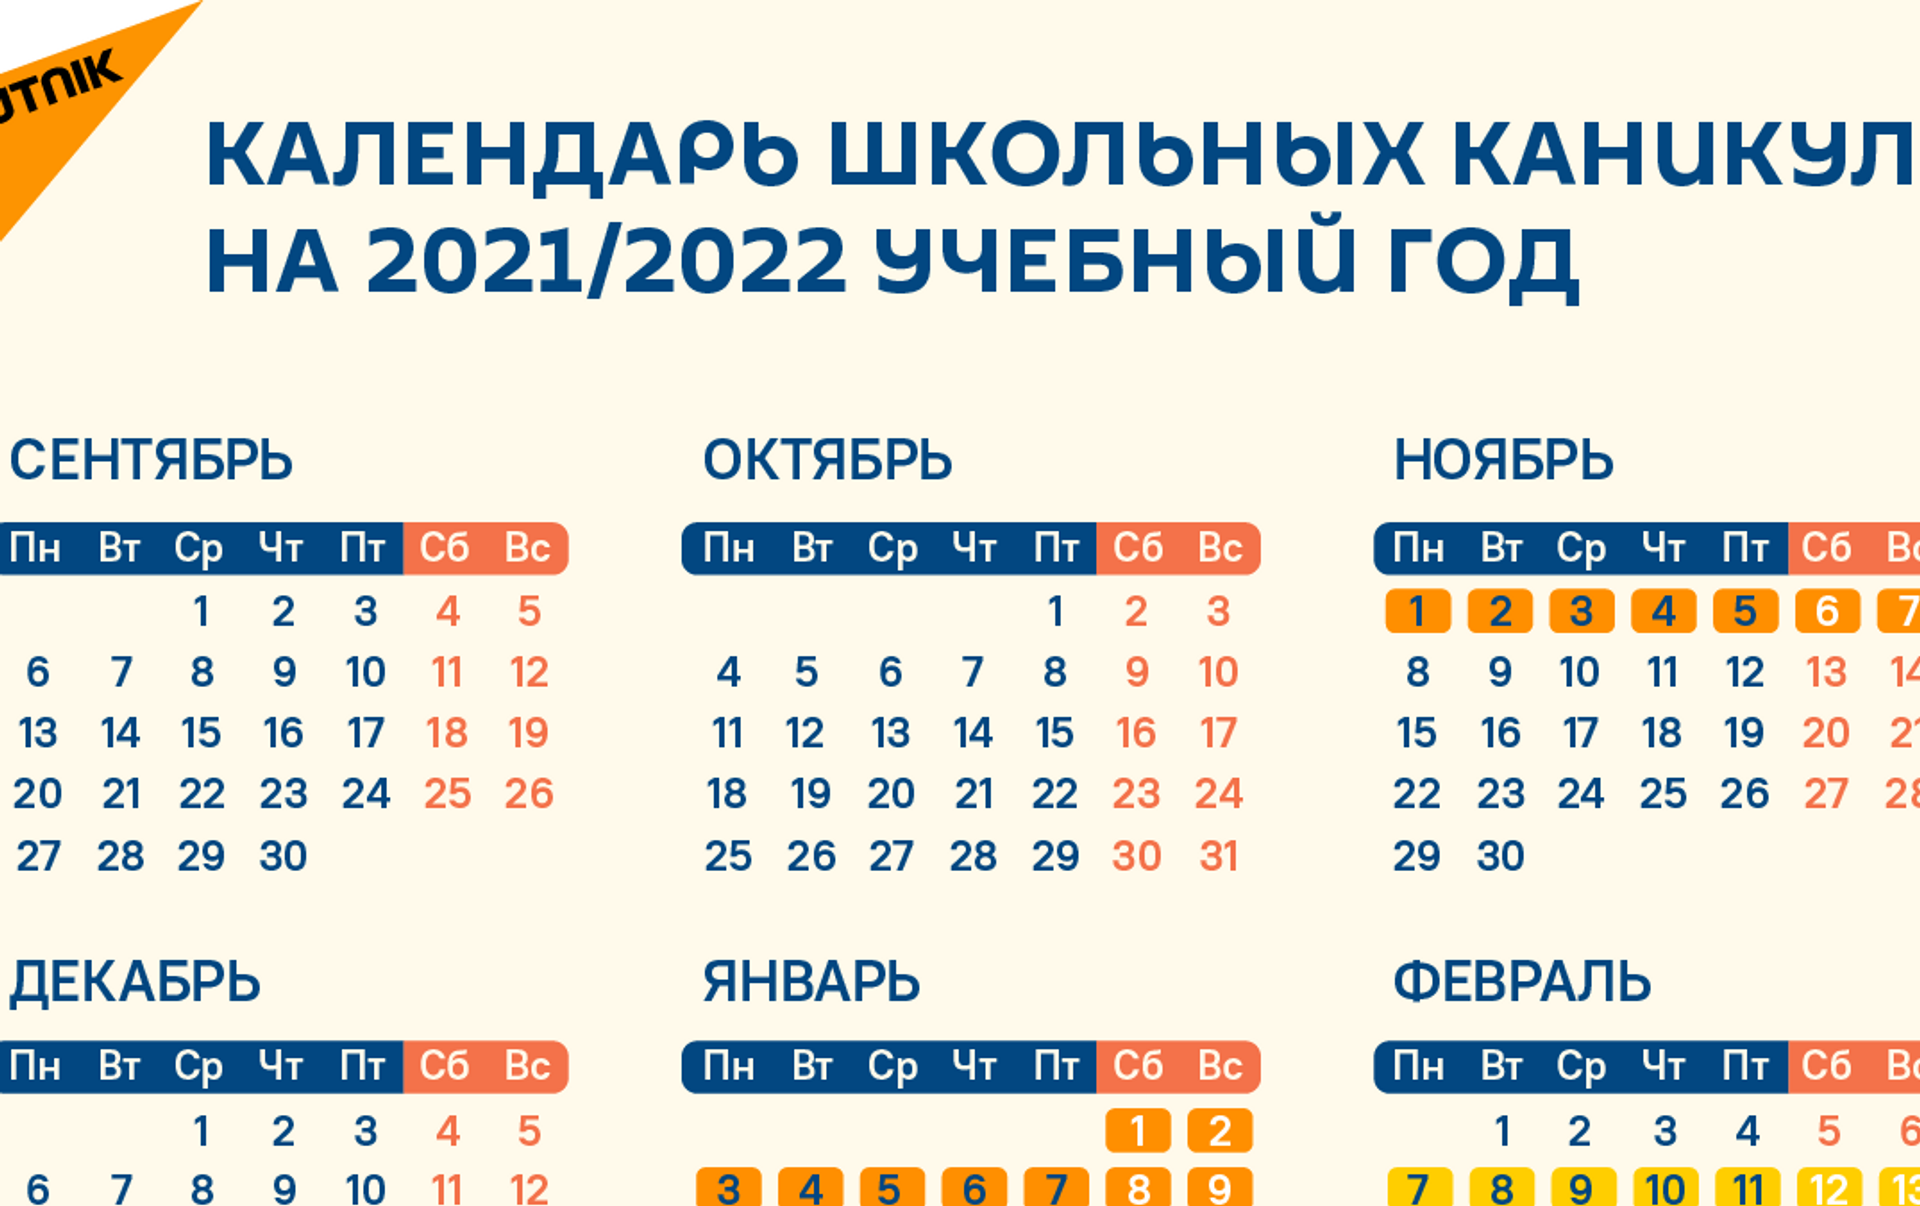 Школьные каникулы в Казахстане в 2021-2022 годы - расписание